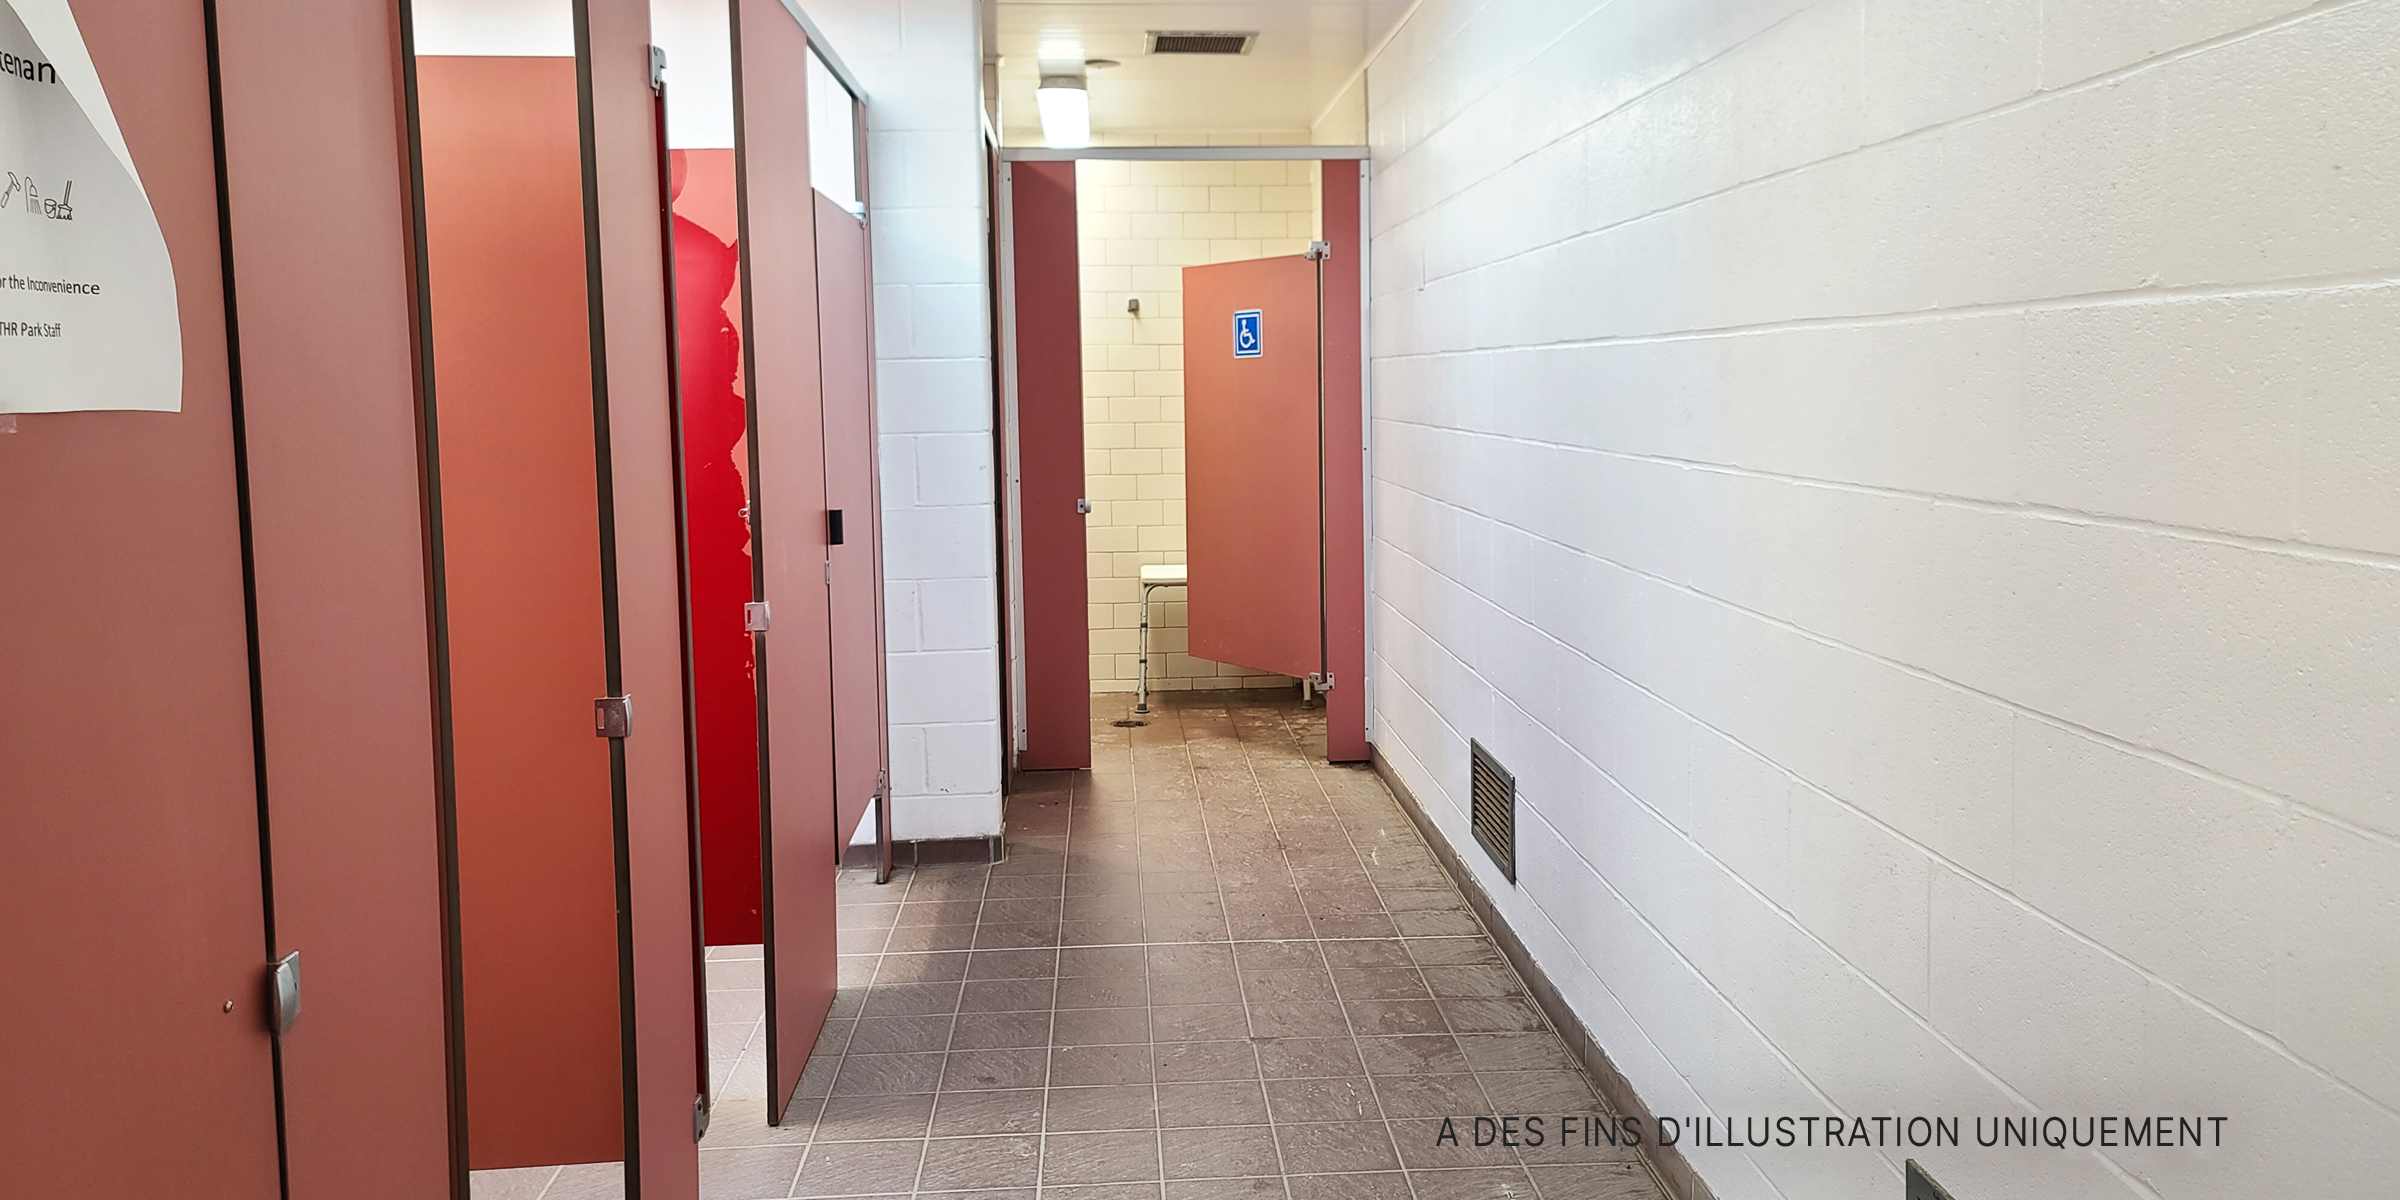 Une rangée de toilettes | Source : Shutterstock